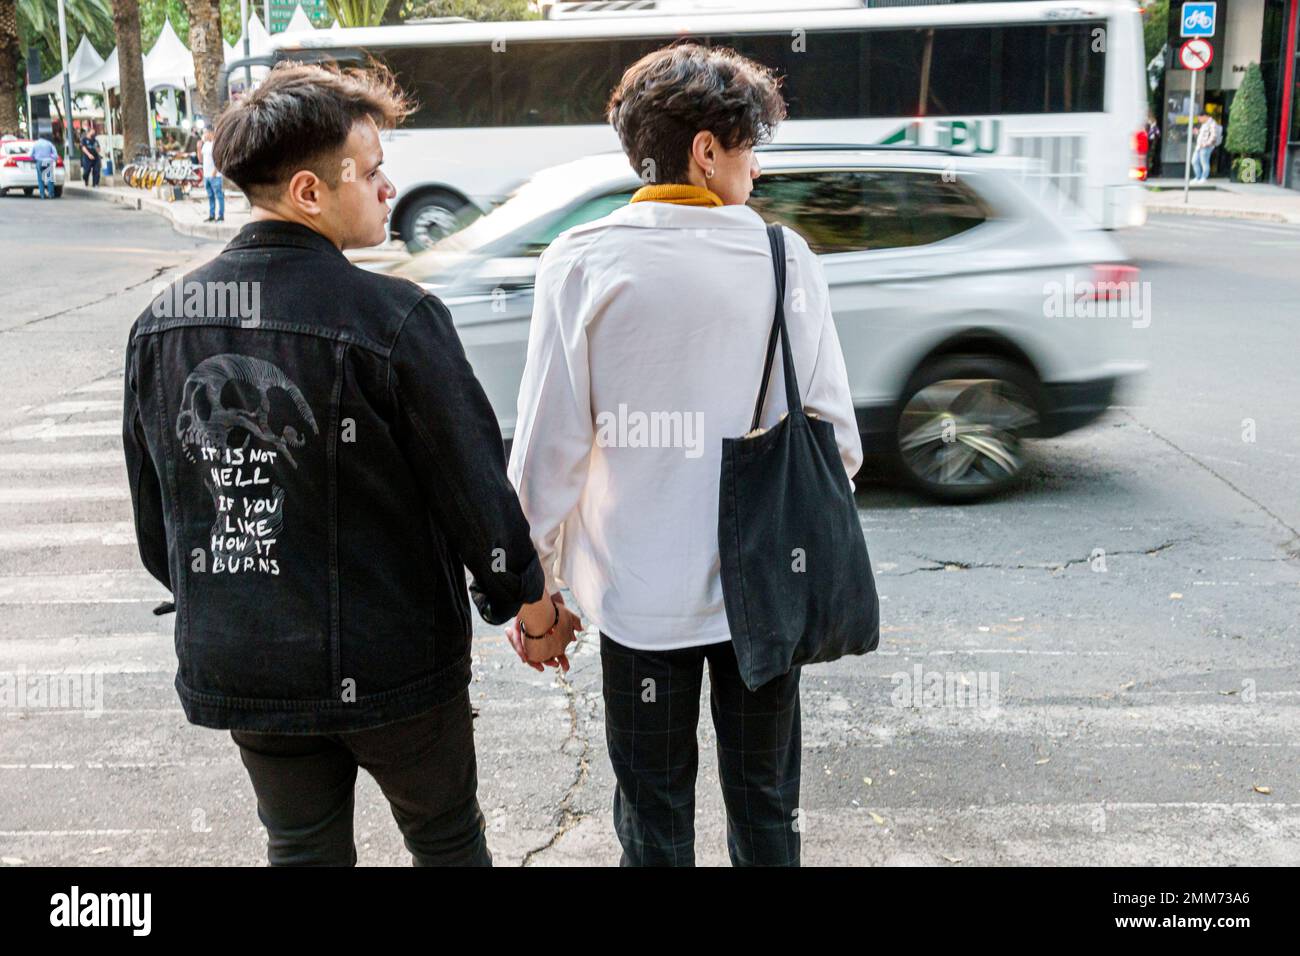 Mexiko-Stadt, Avenida Paseo de la Reforma, Händchen halten schwules Paar, viel befahrene Straße überqueren, männliche Männer, Erwachsene Erwachsene, Bewohner, Fußgängerzone Stockfoto